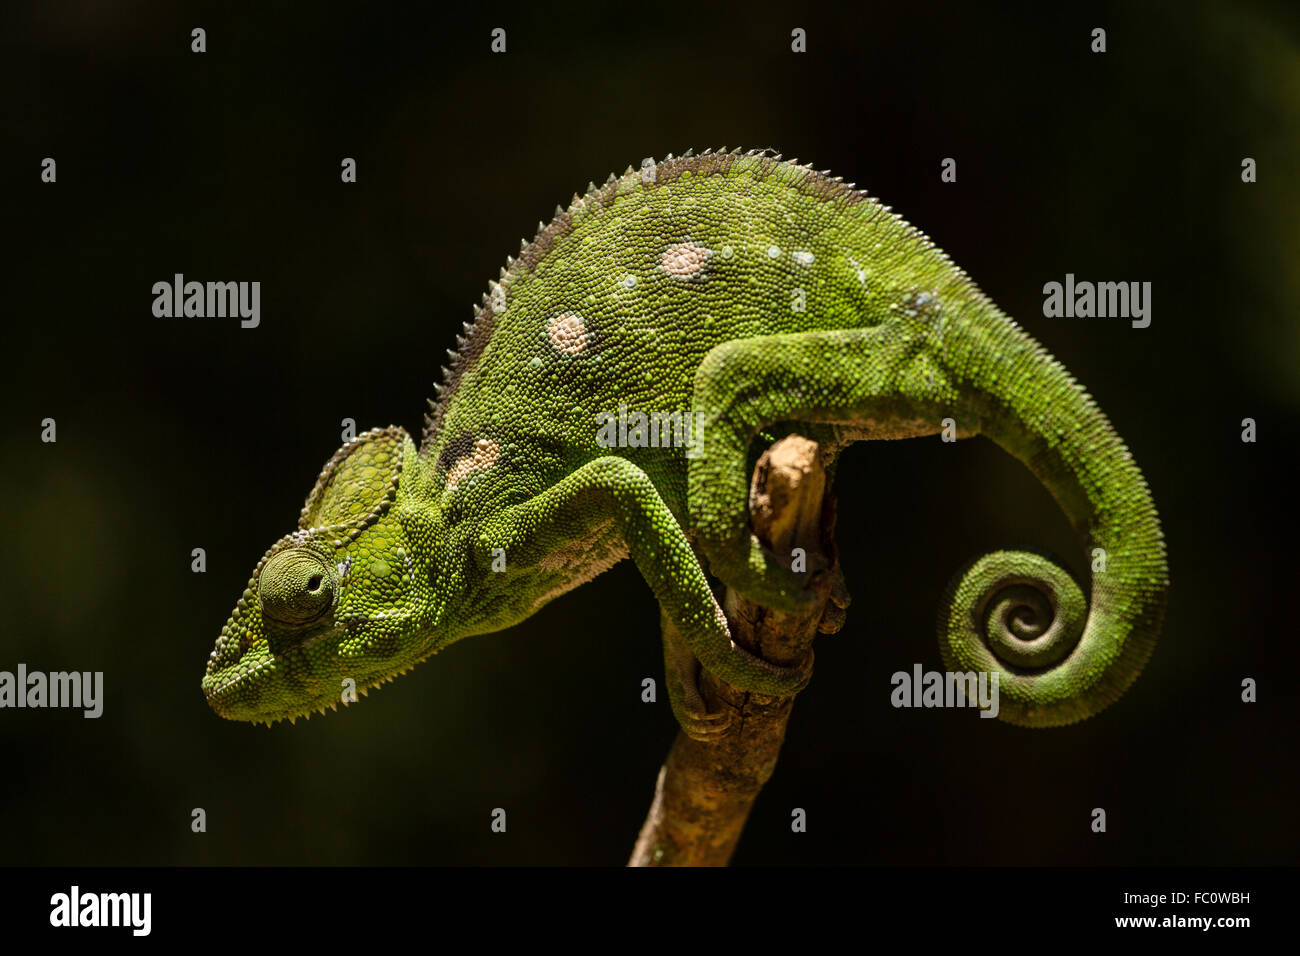 Chameleon, Madagascar Stock Photo